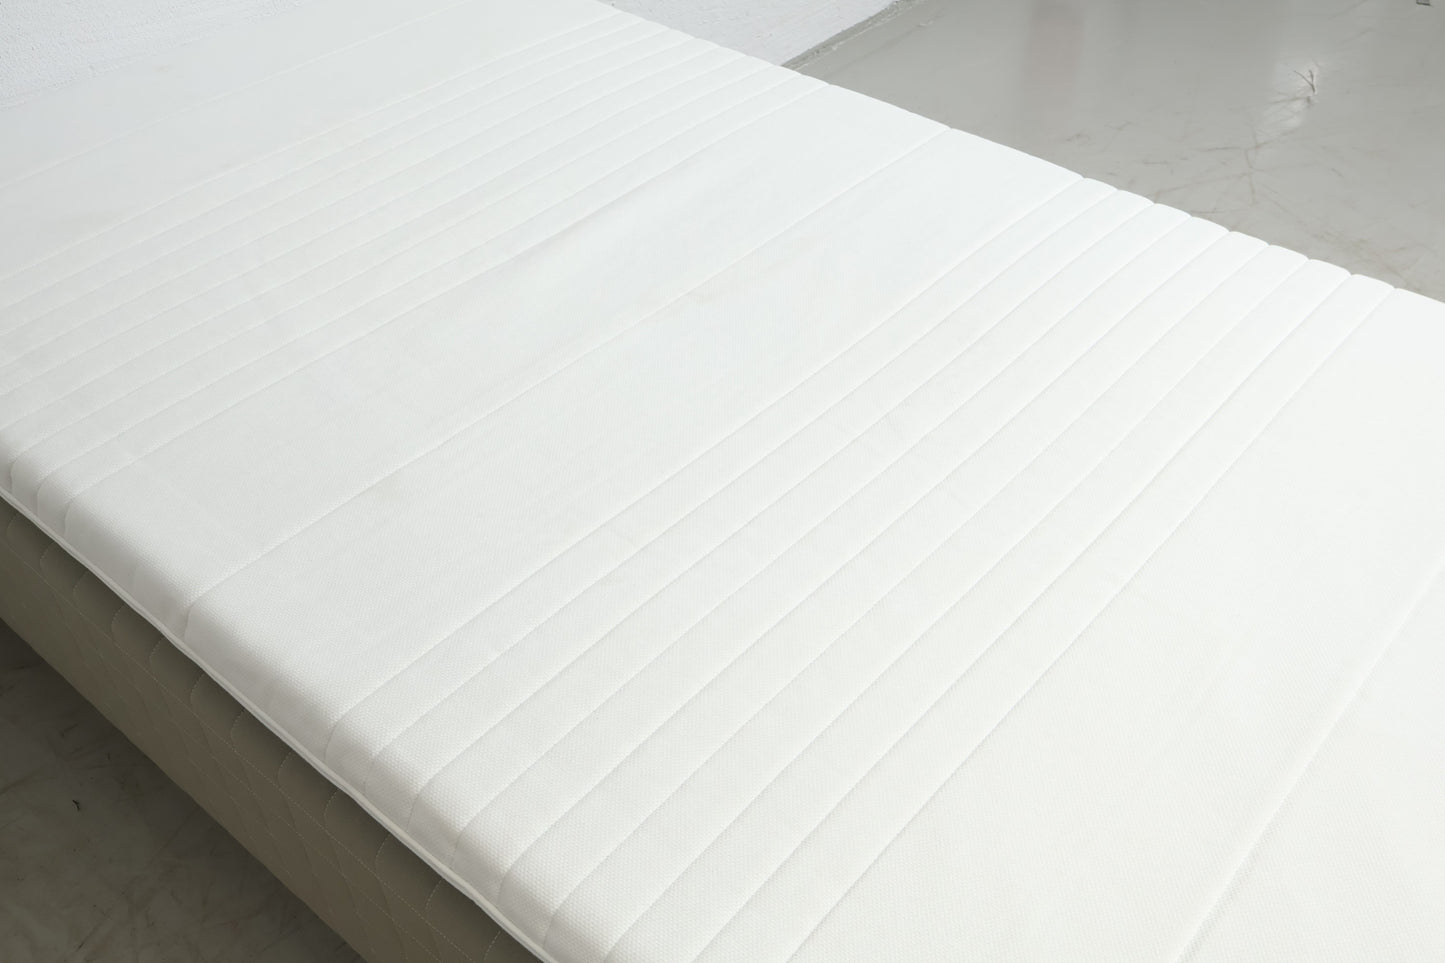 Nyrenset | Beige/grå IKEA Skårer 120x200 seng med Tussøy overmadrass